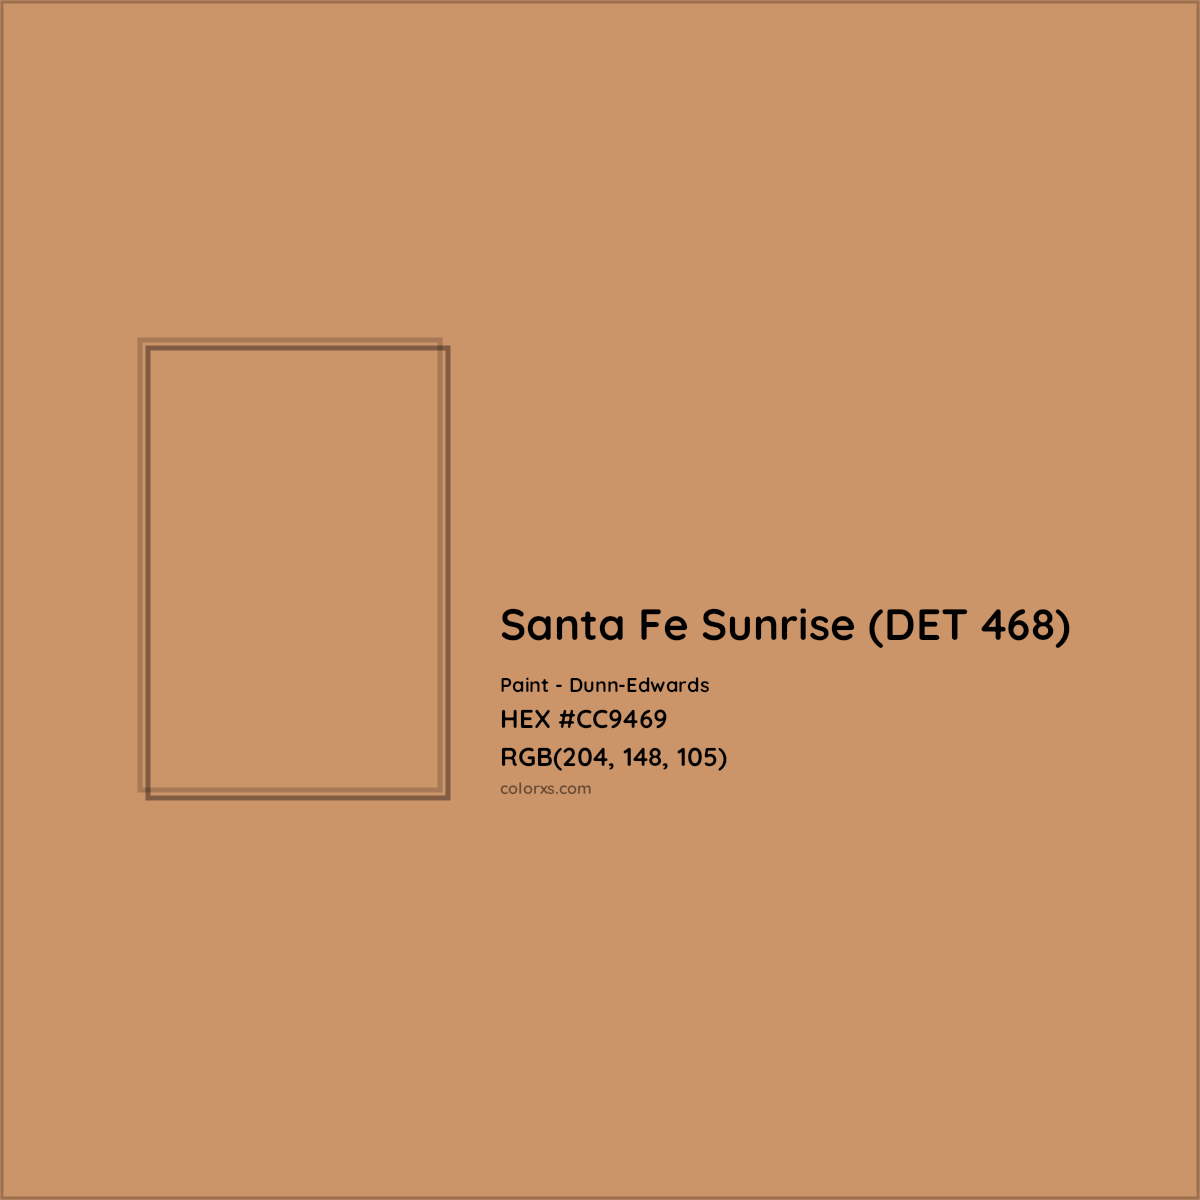 HEX #CC9469 Santa Fe Sunrise (DET 468) Paint Dunn-Edwards - Color Code